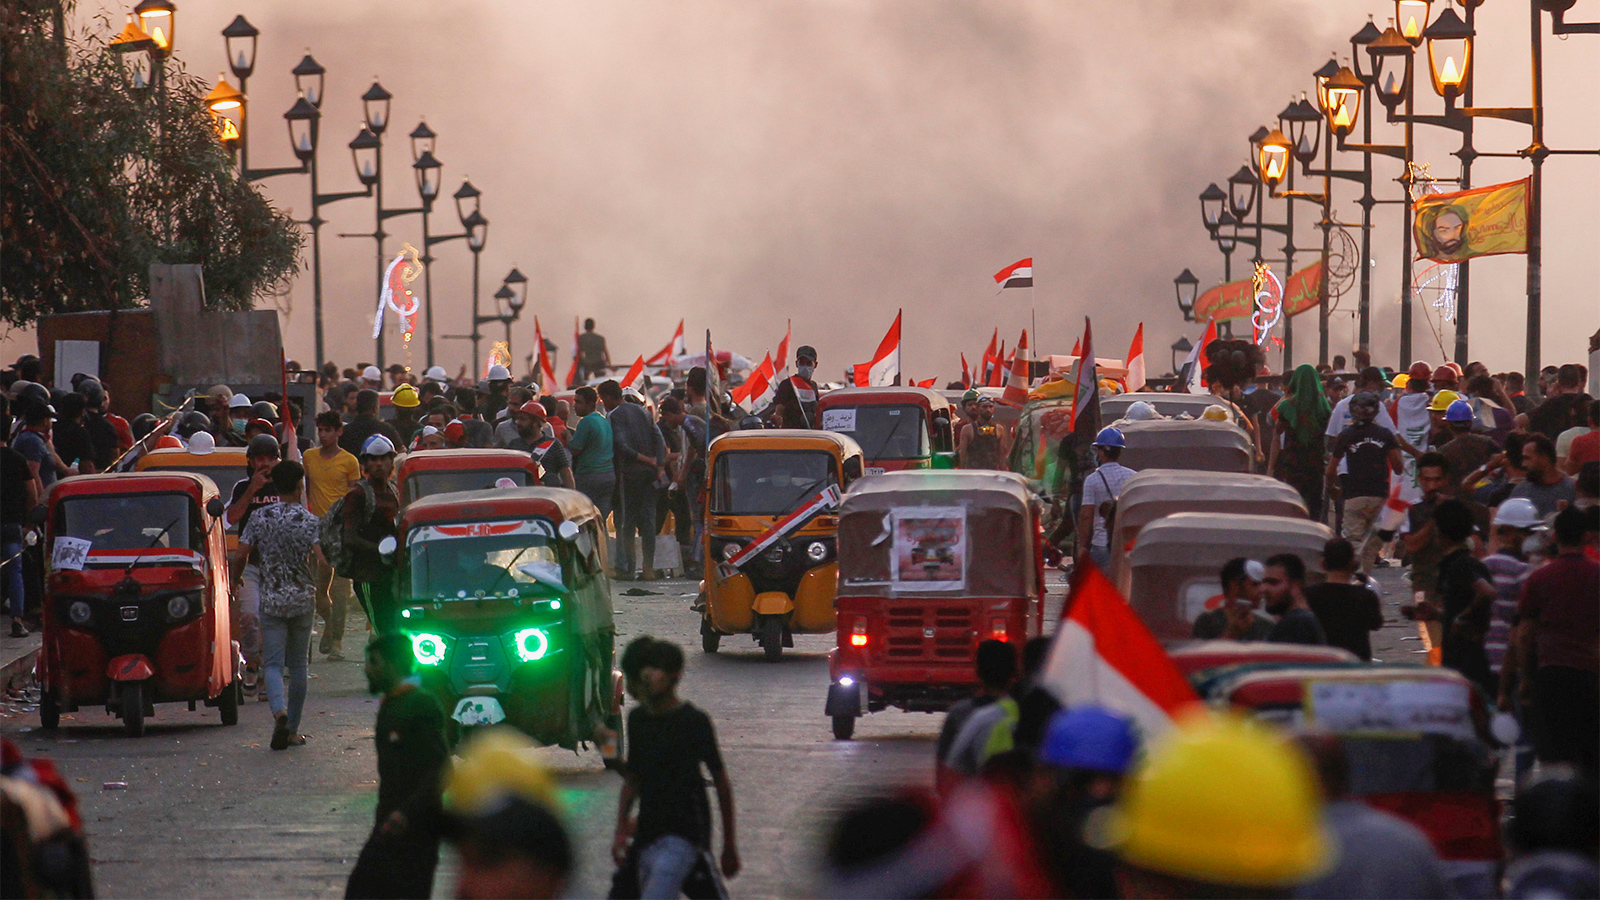 السلطات العراقية واجهت الاحتجاجات بعنف فسقط عشرات القتلى وآلاف الجرحى (الجزيرة)